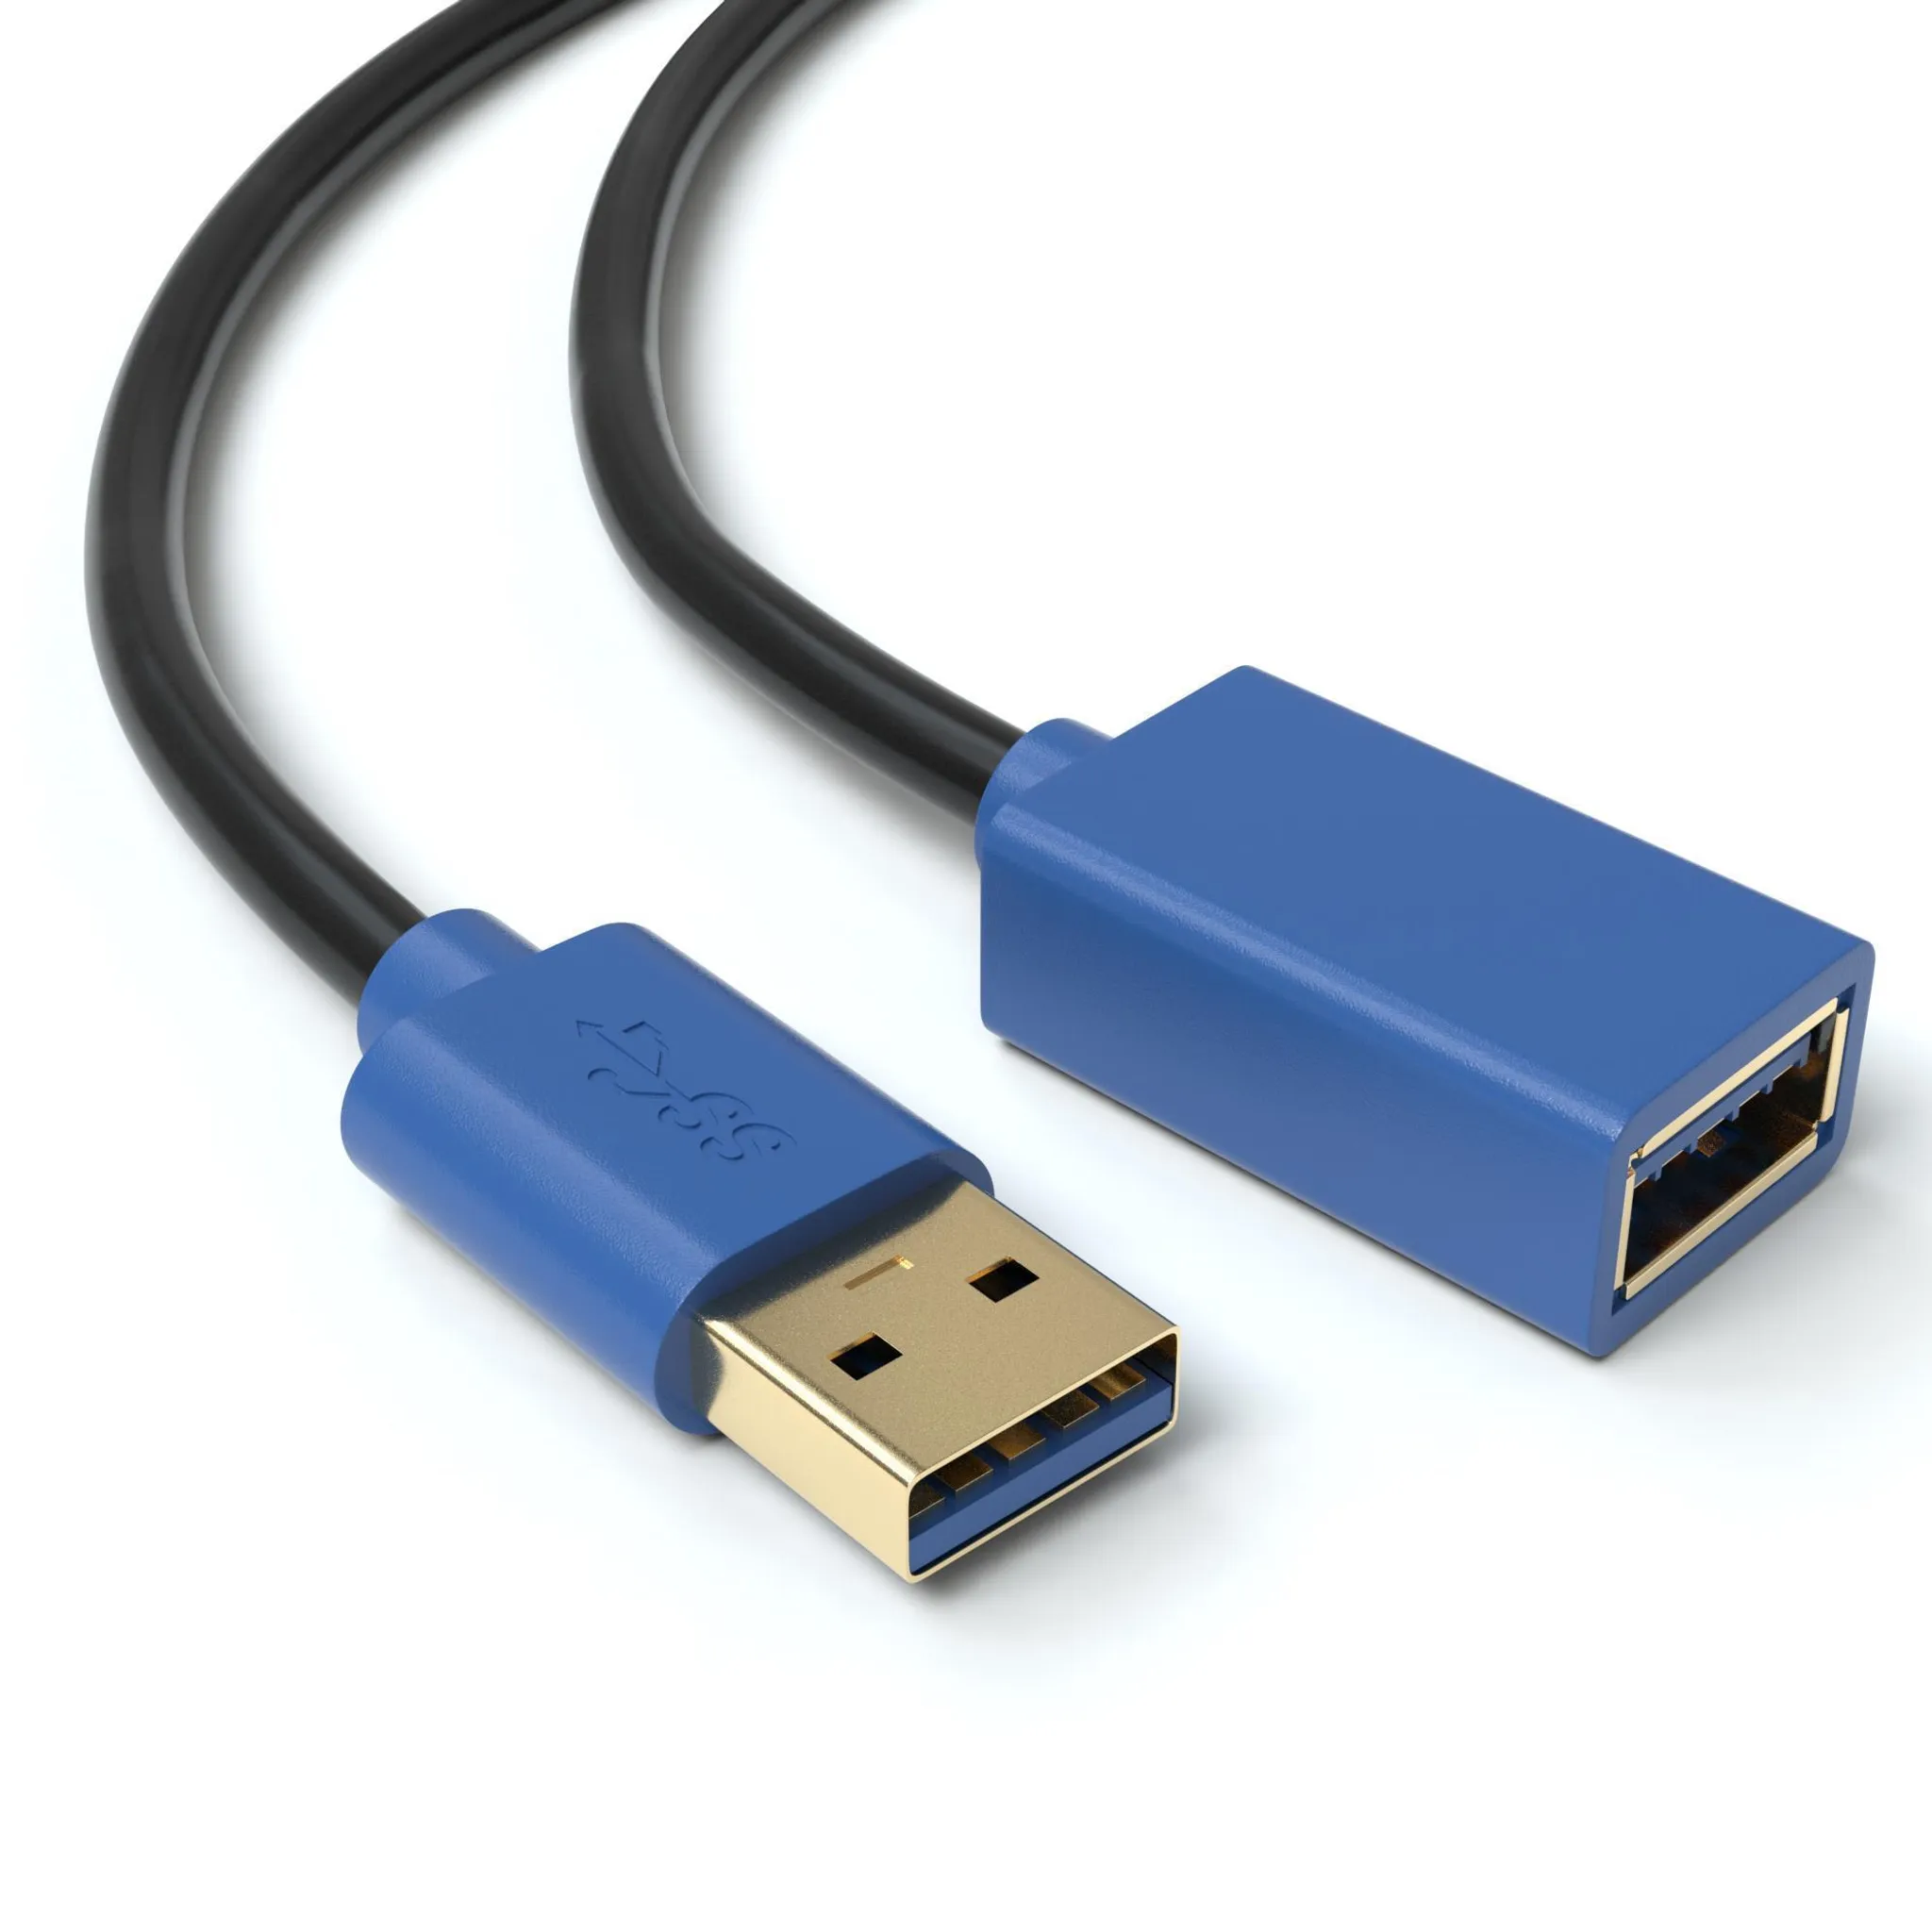 1,5m USB 3.0 Verlängerungskabel | Kaufland.de